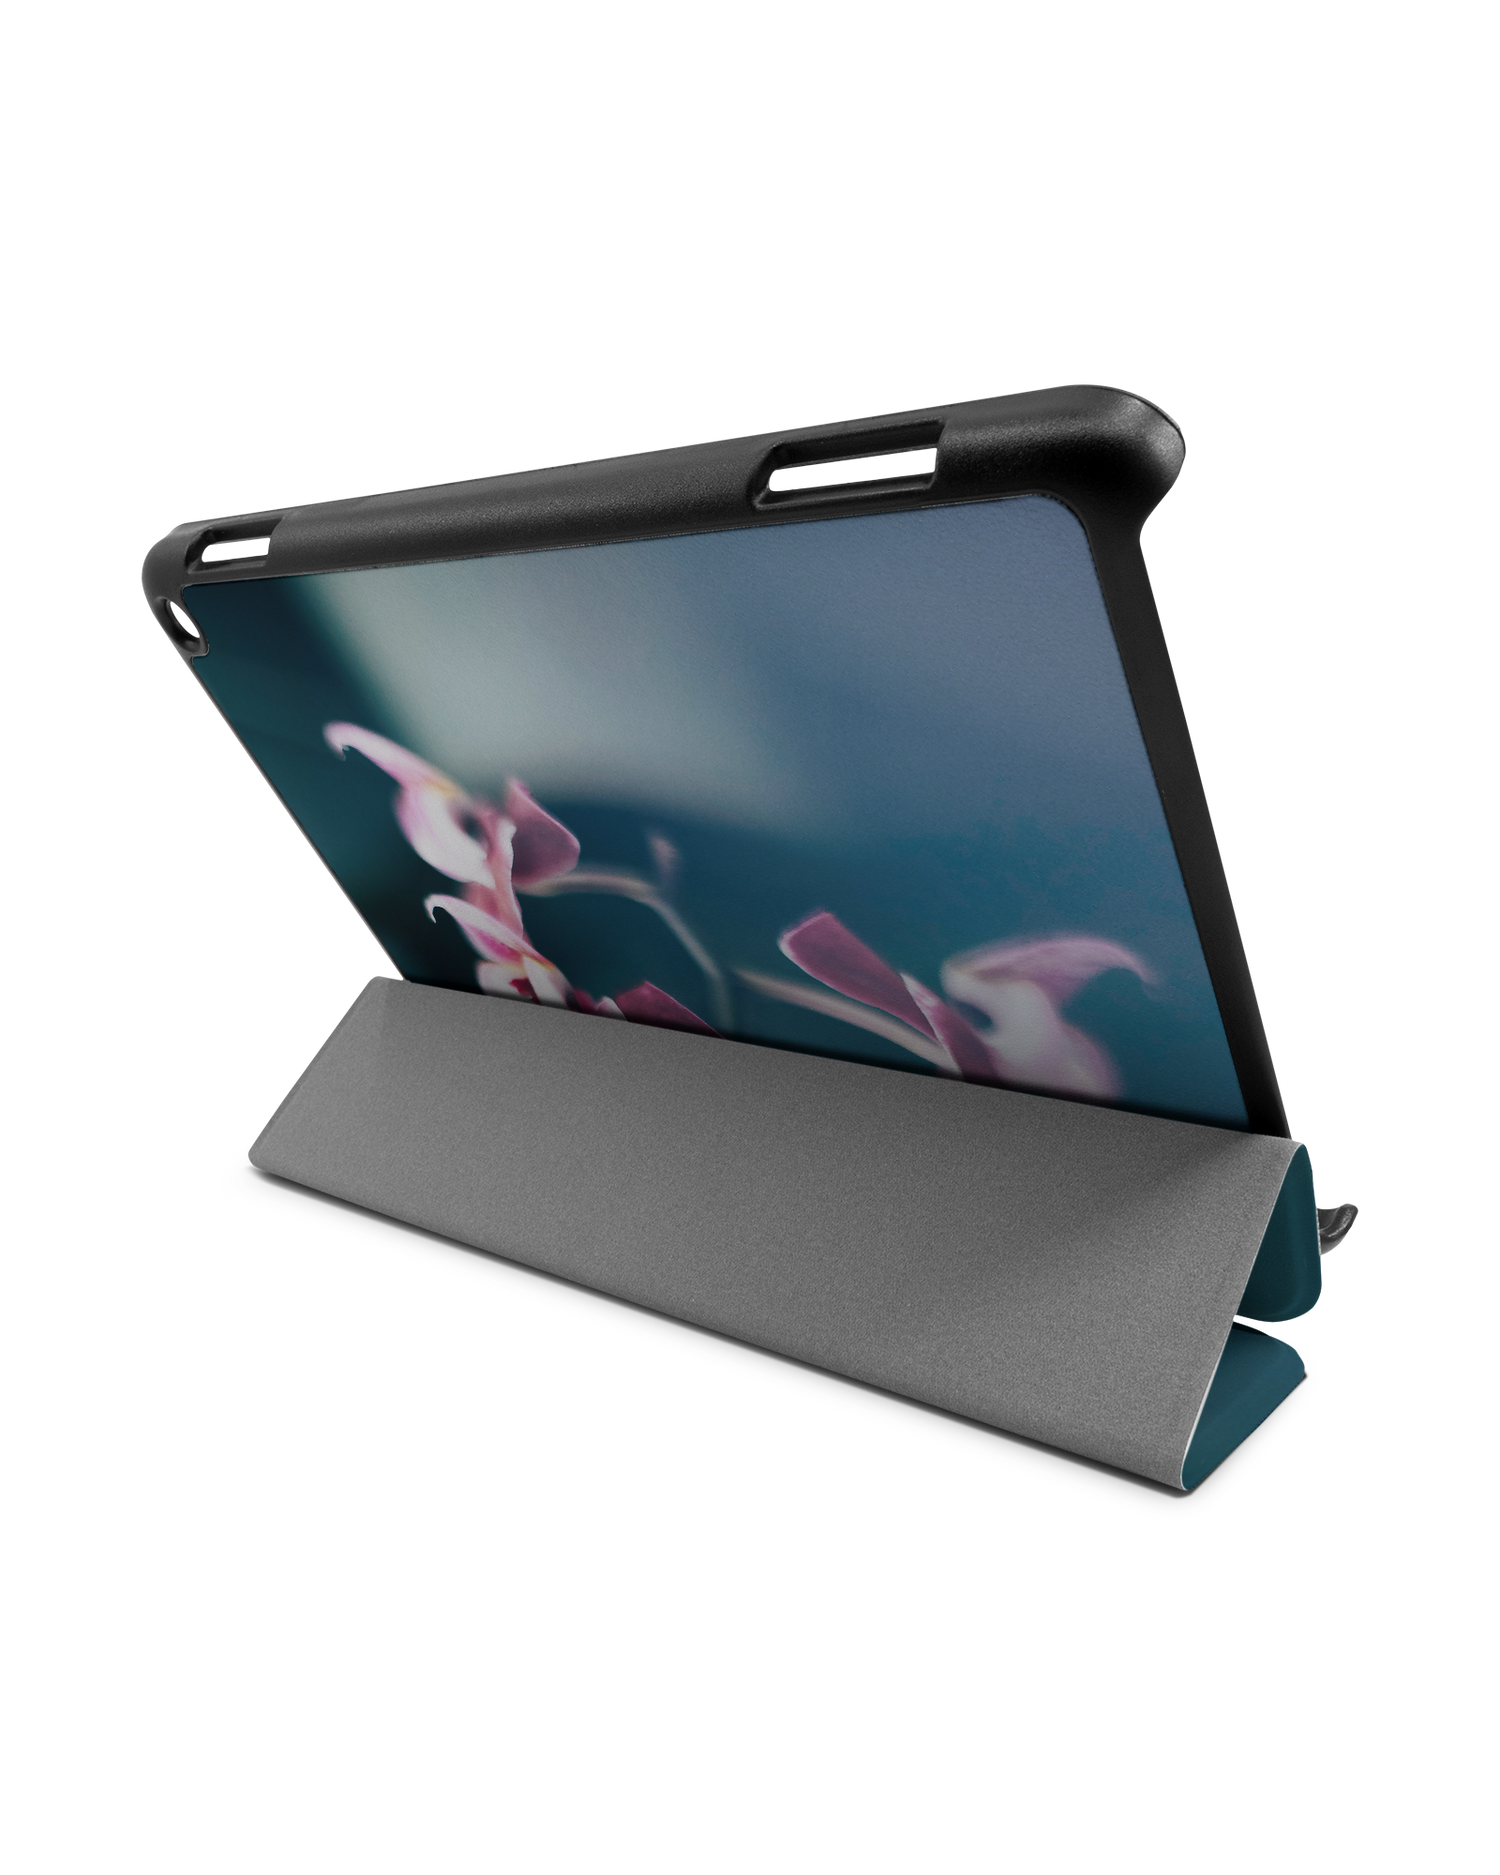 Orchid Tablet Smart Case für Amazon Fire HD 8 (2022), Amazon Fire HD 8 Plus (2022), Amazon Fire HD 8 (2020), Amazon Fire HD 8 Plus (2020): Aufgestellt im Querformat